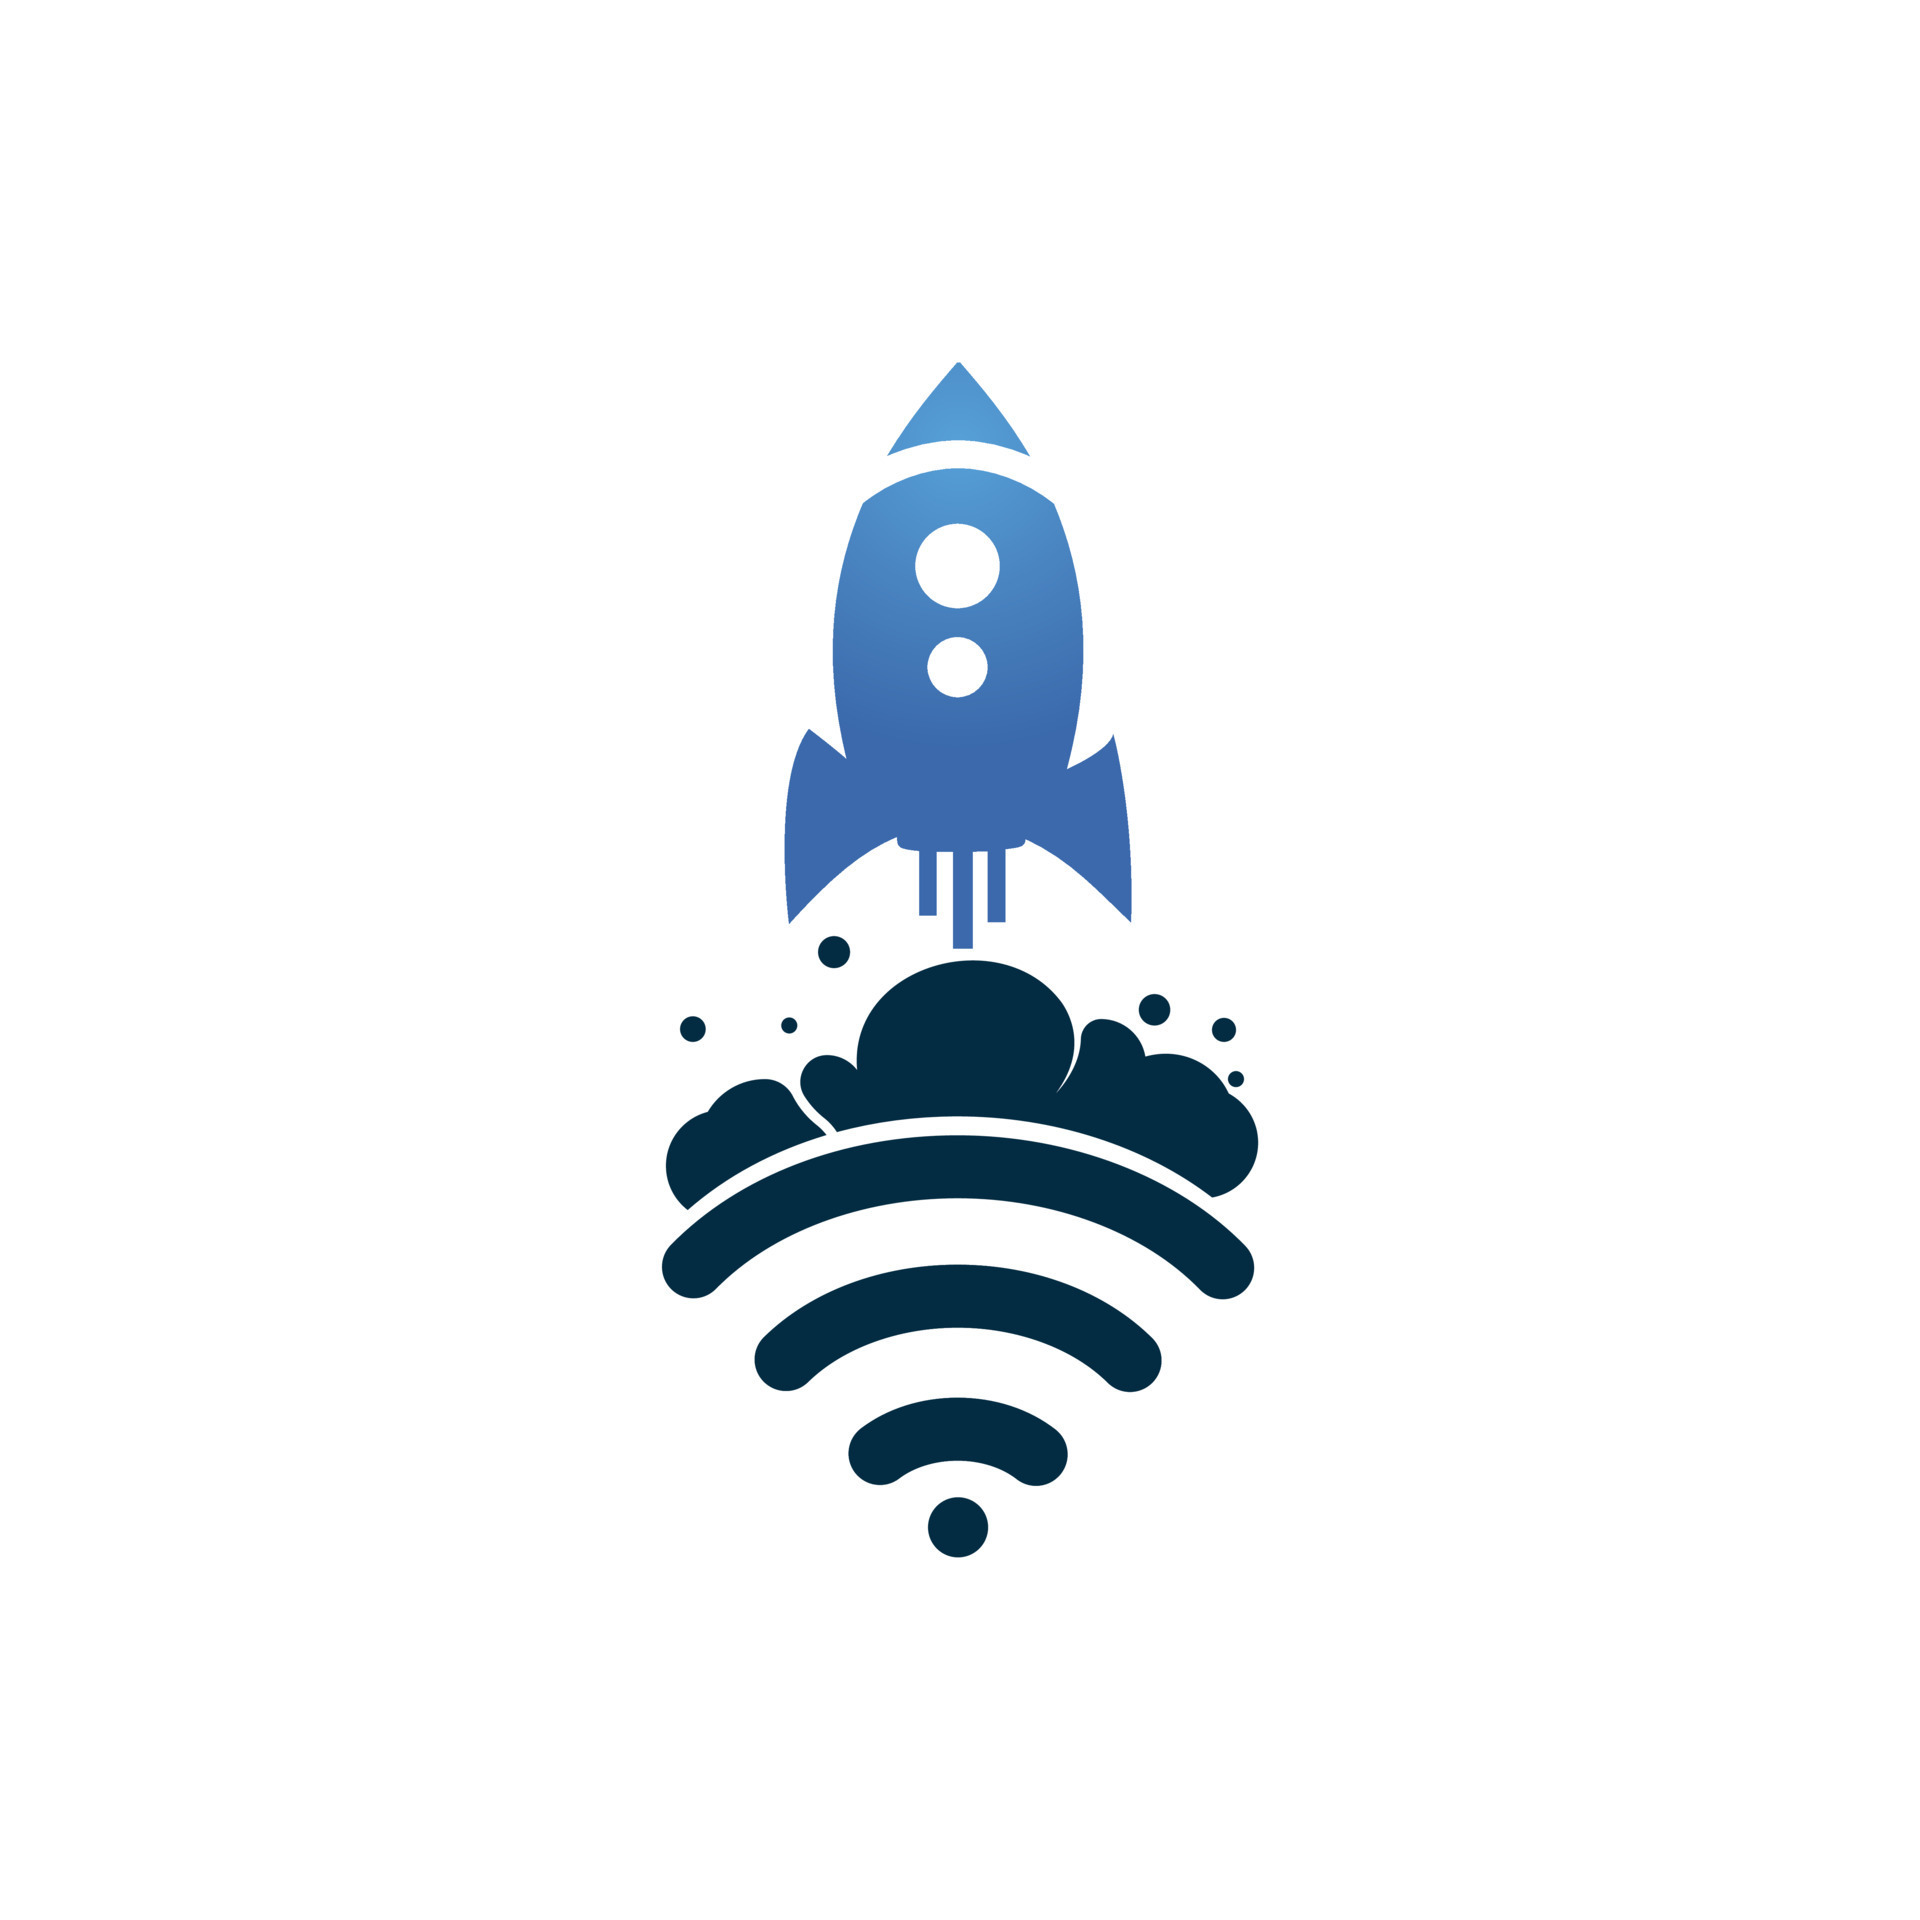 Arenoso Beber agua traición Wifi Rocket vector logo design. Wifi signal symbol and rocket design  vector. 11405485 Vector Art at Vecteezy